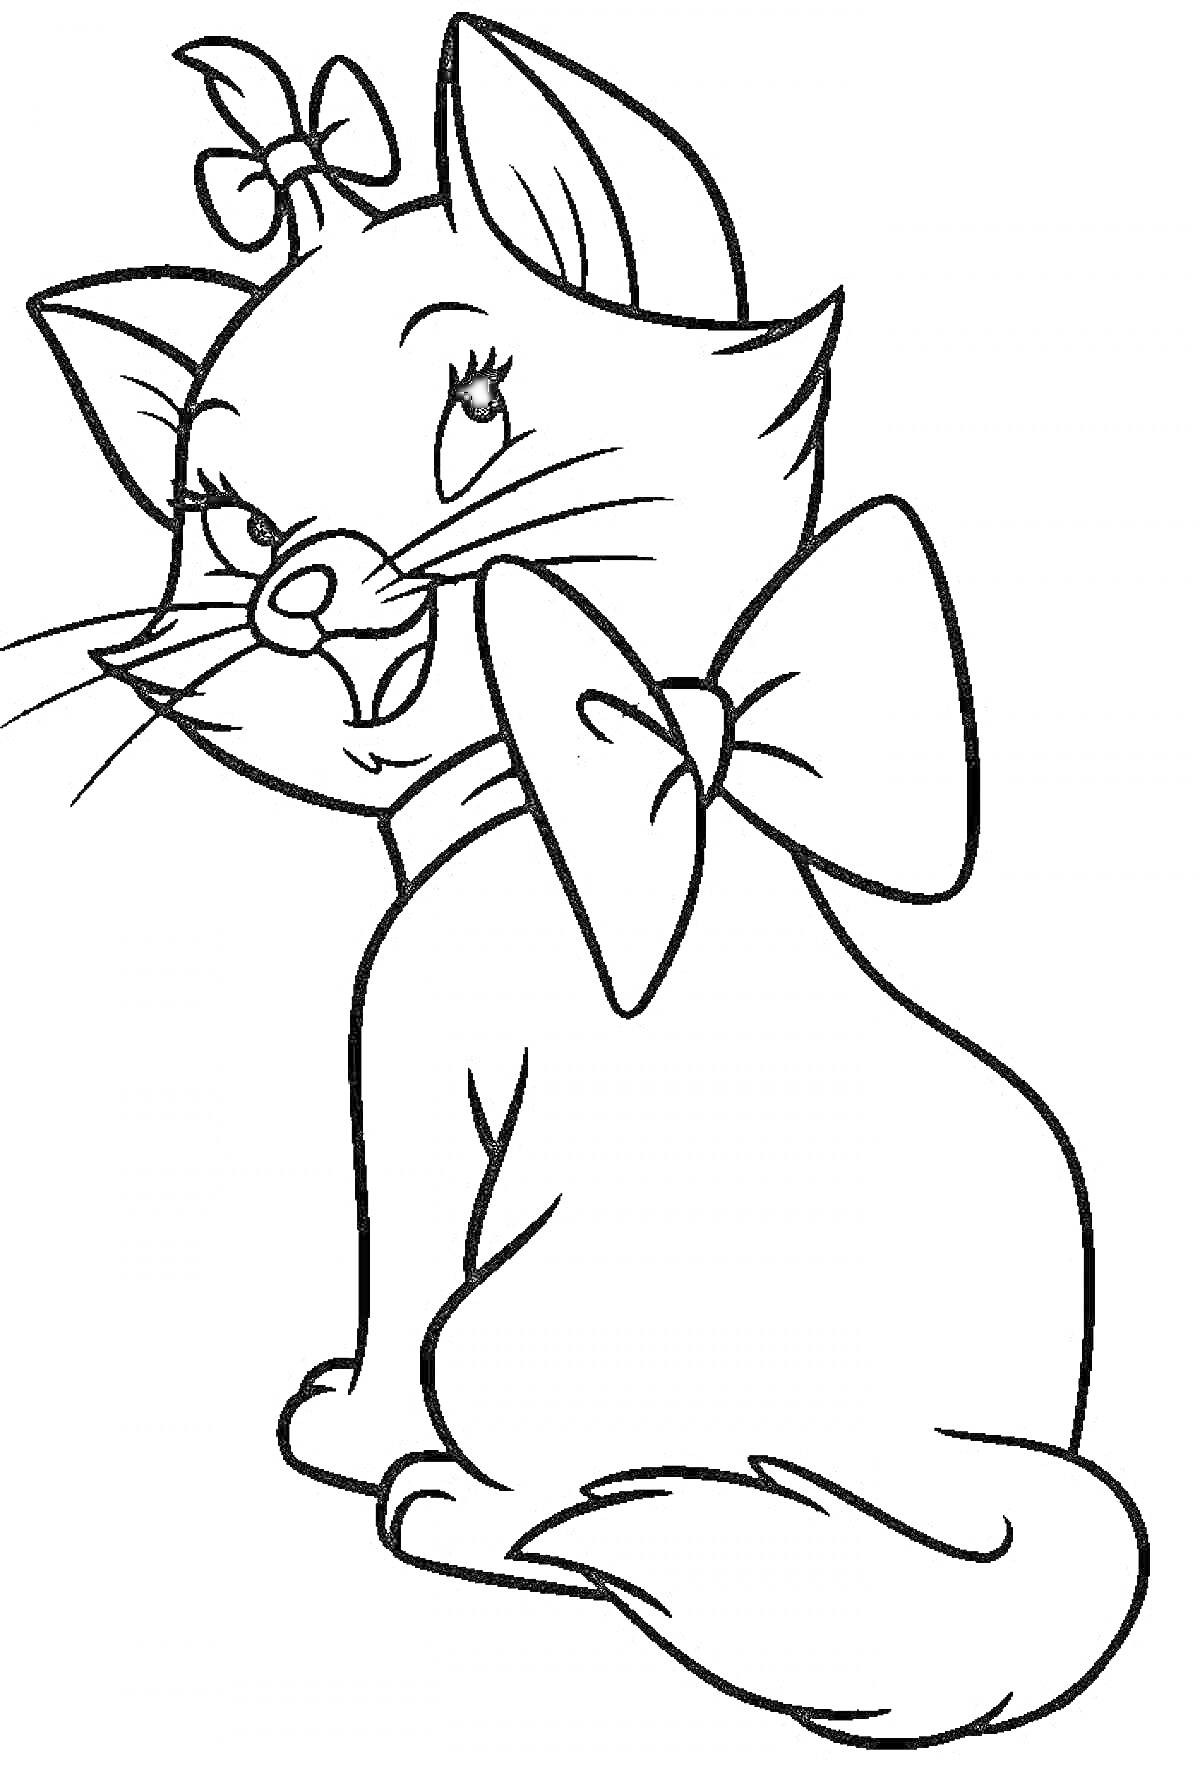 Раскраска Кошка Мари с бантиками на голове и шее